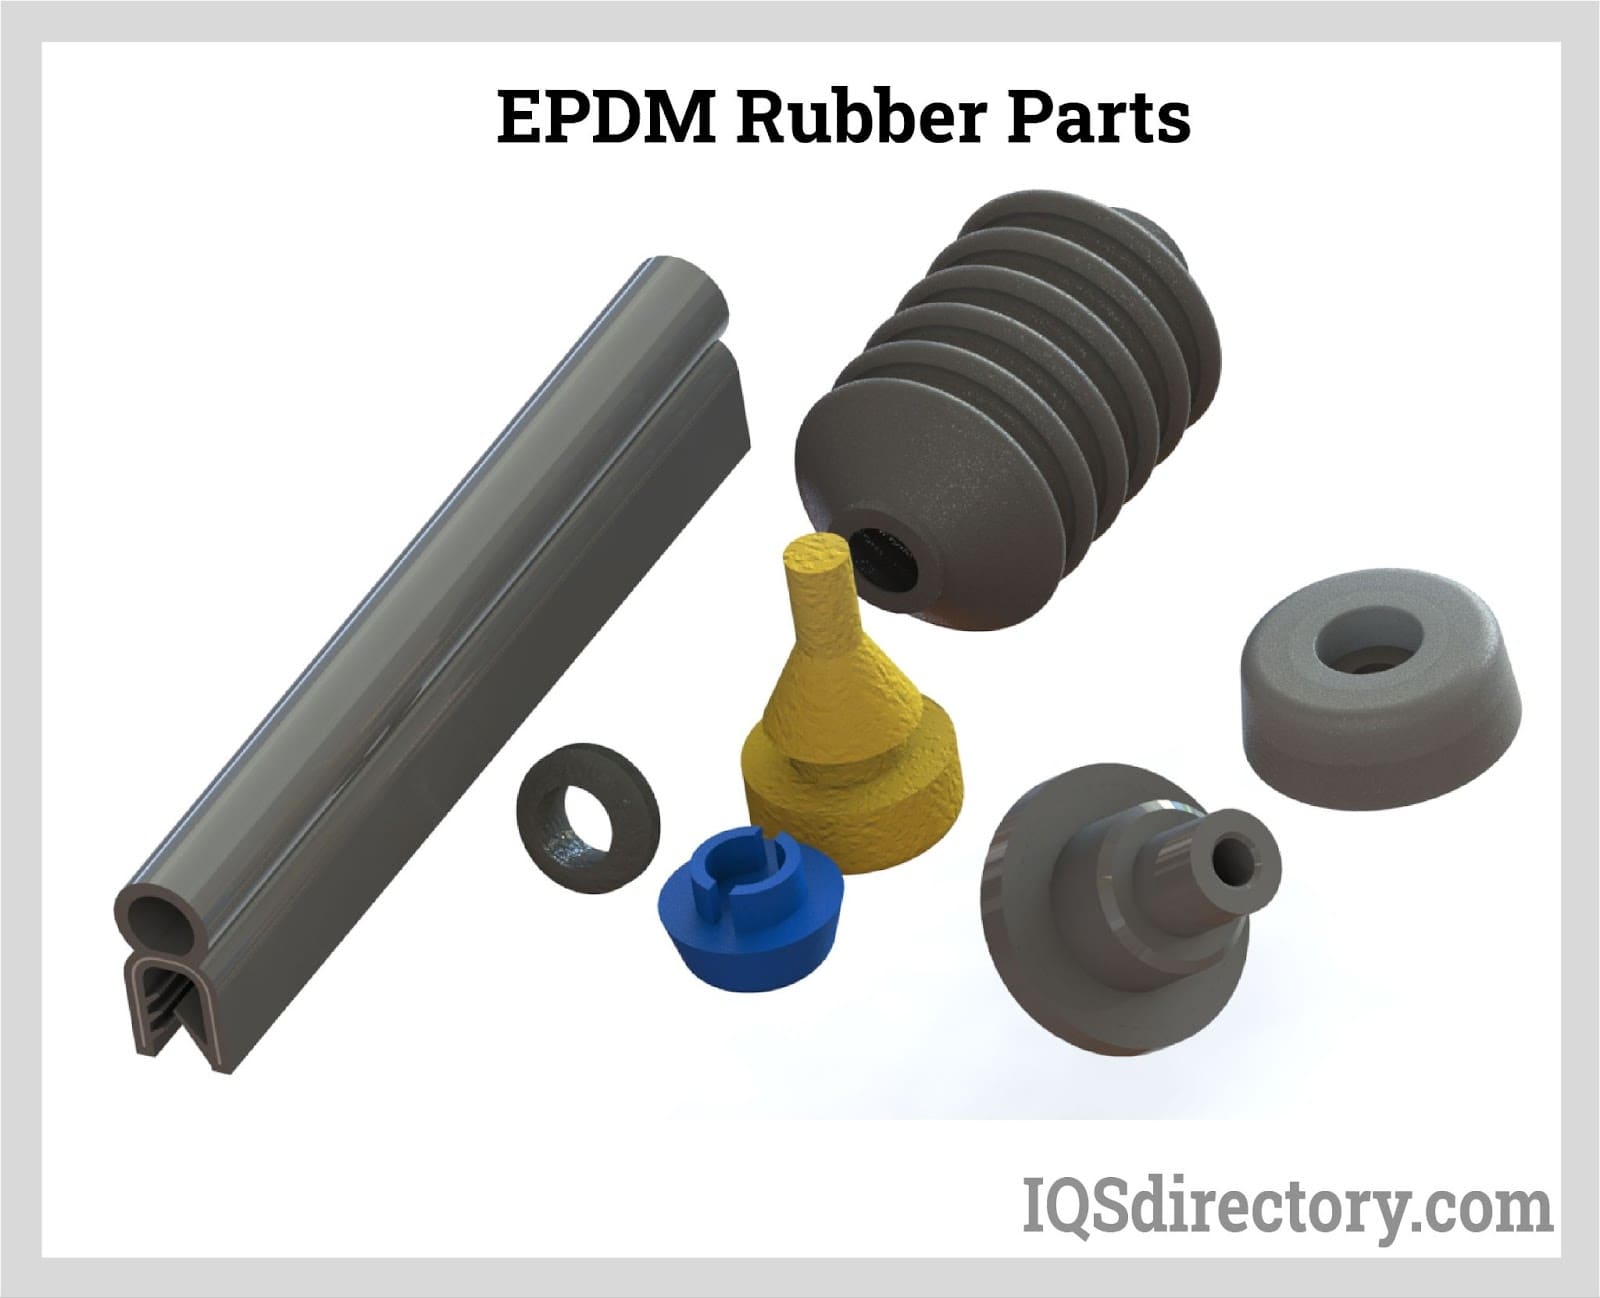 EPDM Rubber Parts